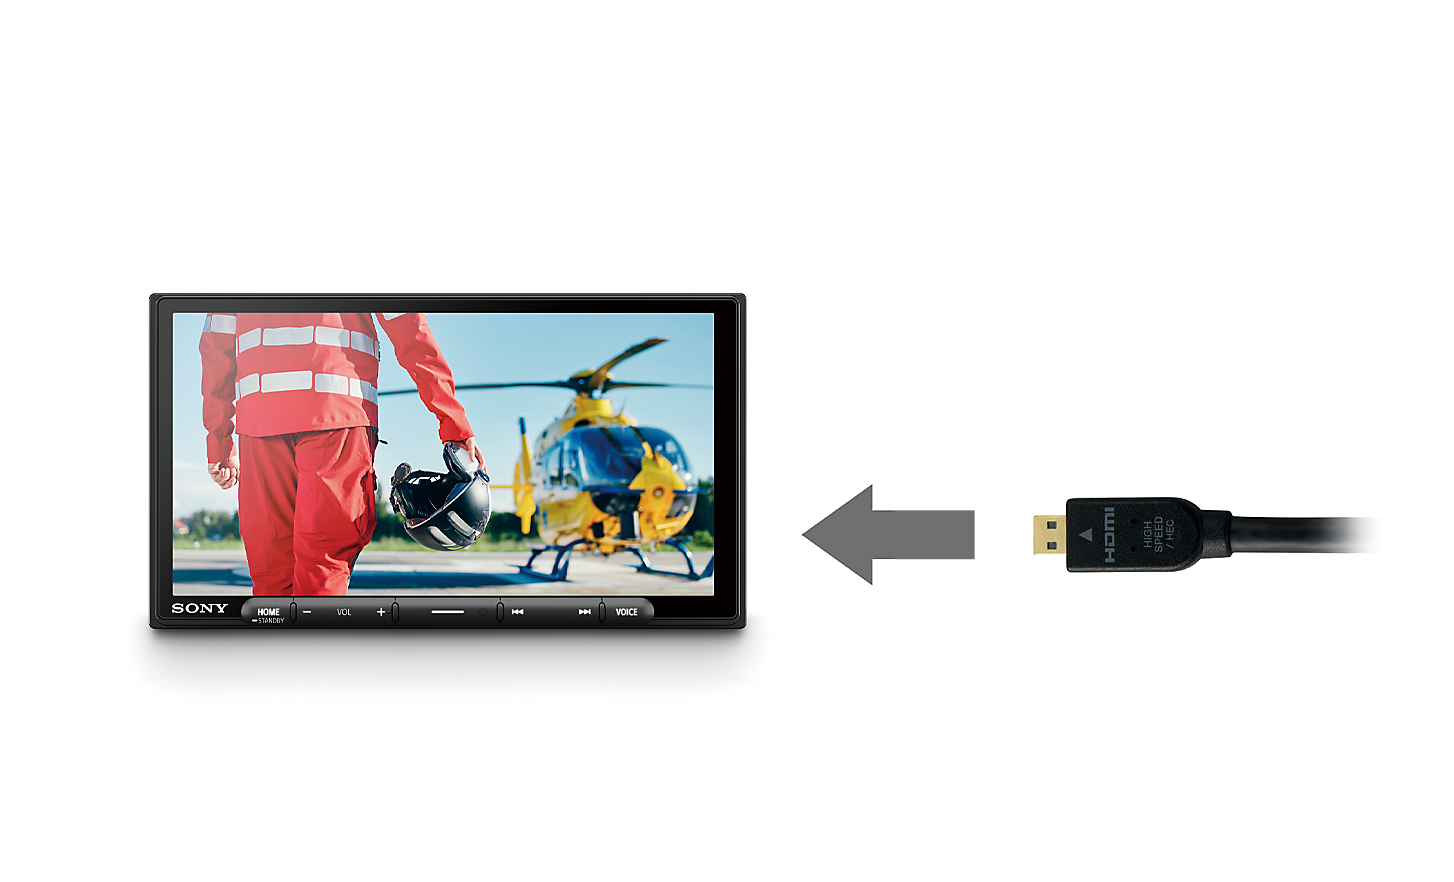 Imagem de um cabo HDMI com uma seta a apontar para o XAV-AX6050 com um piloto e um helicóptero no ecrã